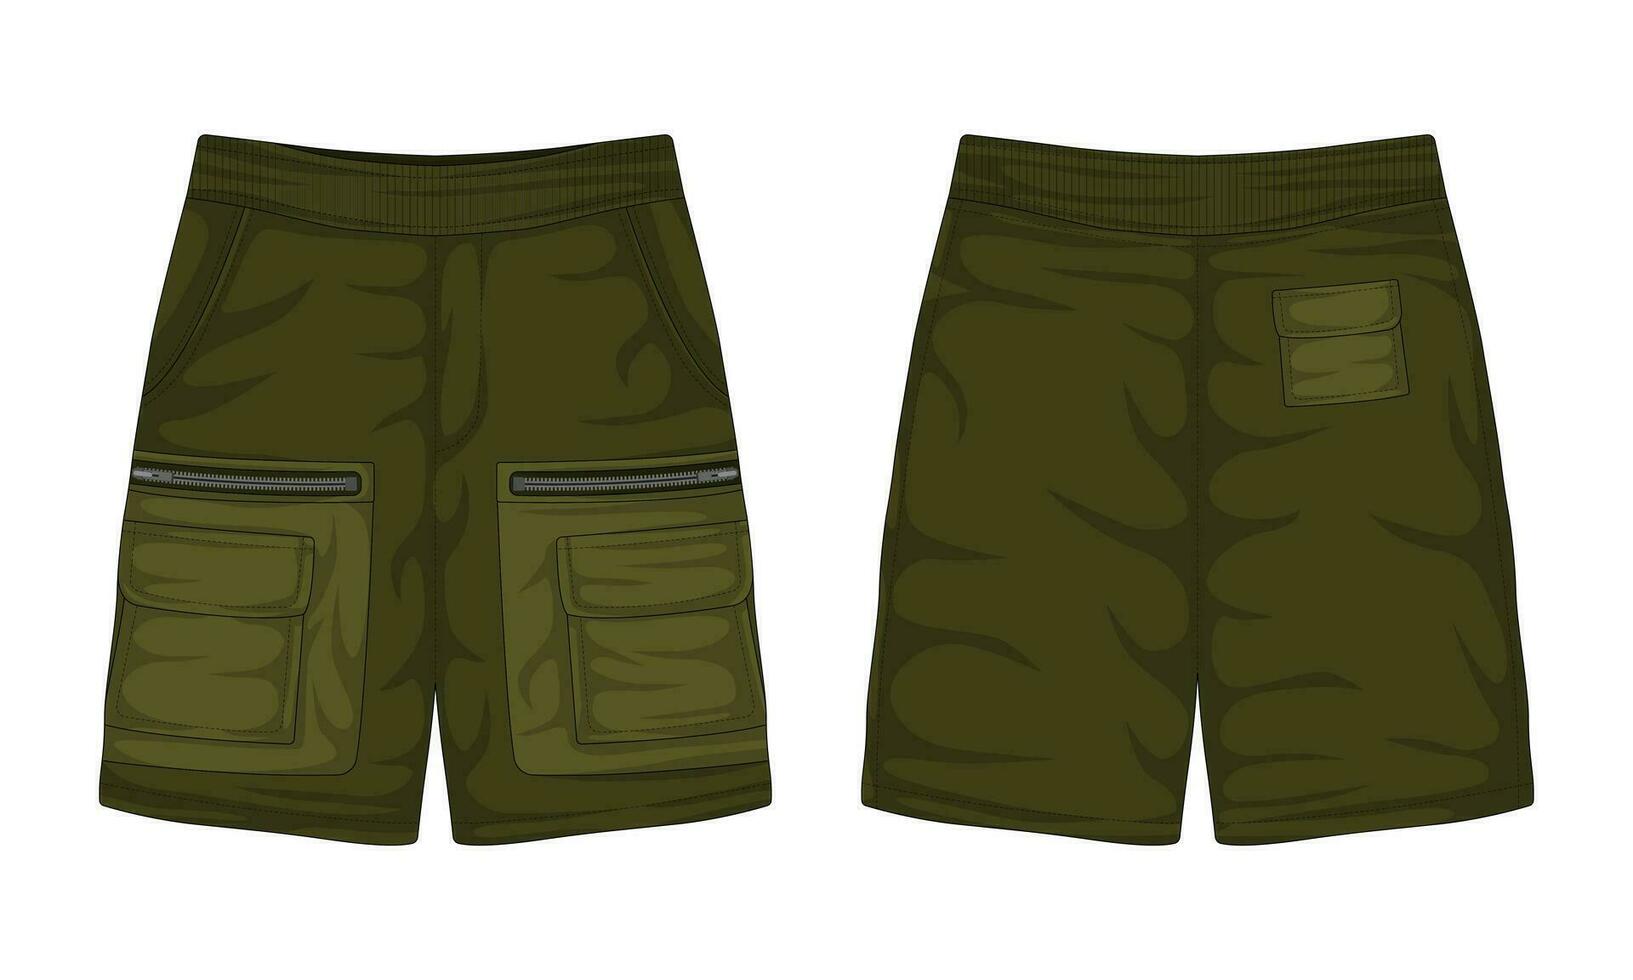 buitenshuis gewoontjes shorts mockup voorkant en terug visie. vector illustratie